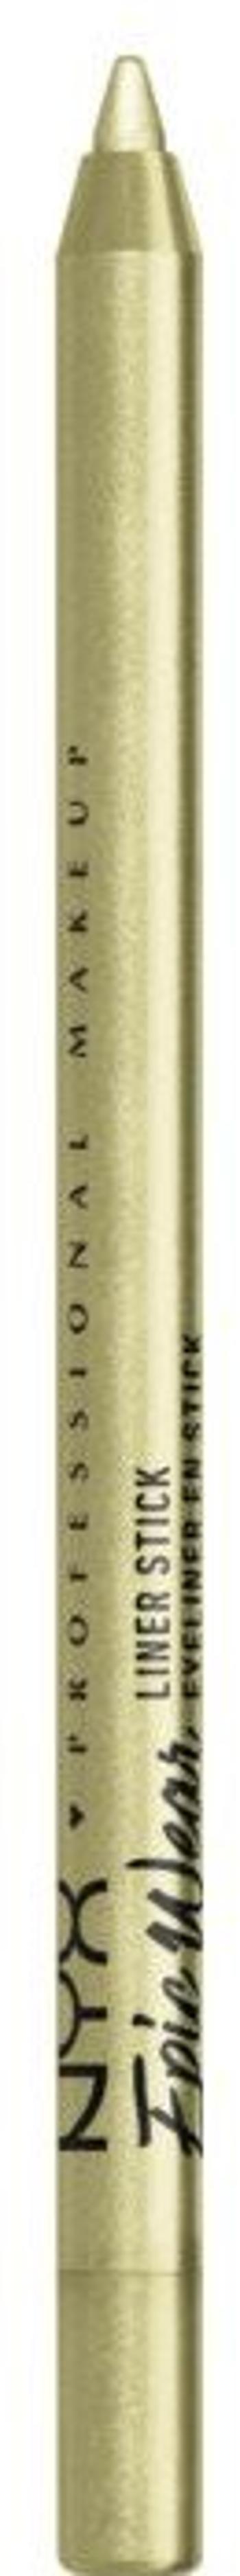 NYX Professional Makeup Epic Wear Liner Sticks voděodolná linka na oči - 24 Chartreuse 1.2 g